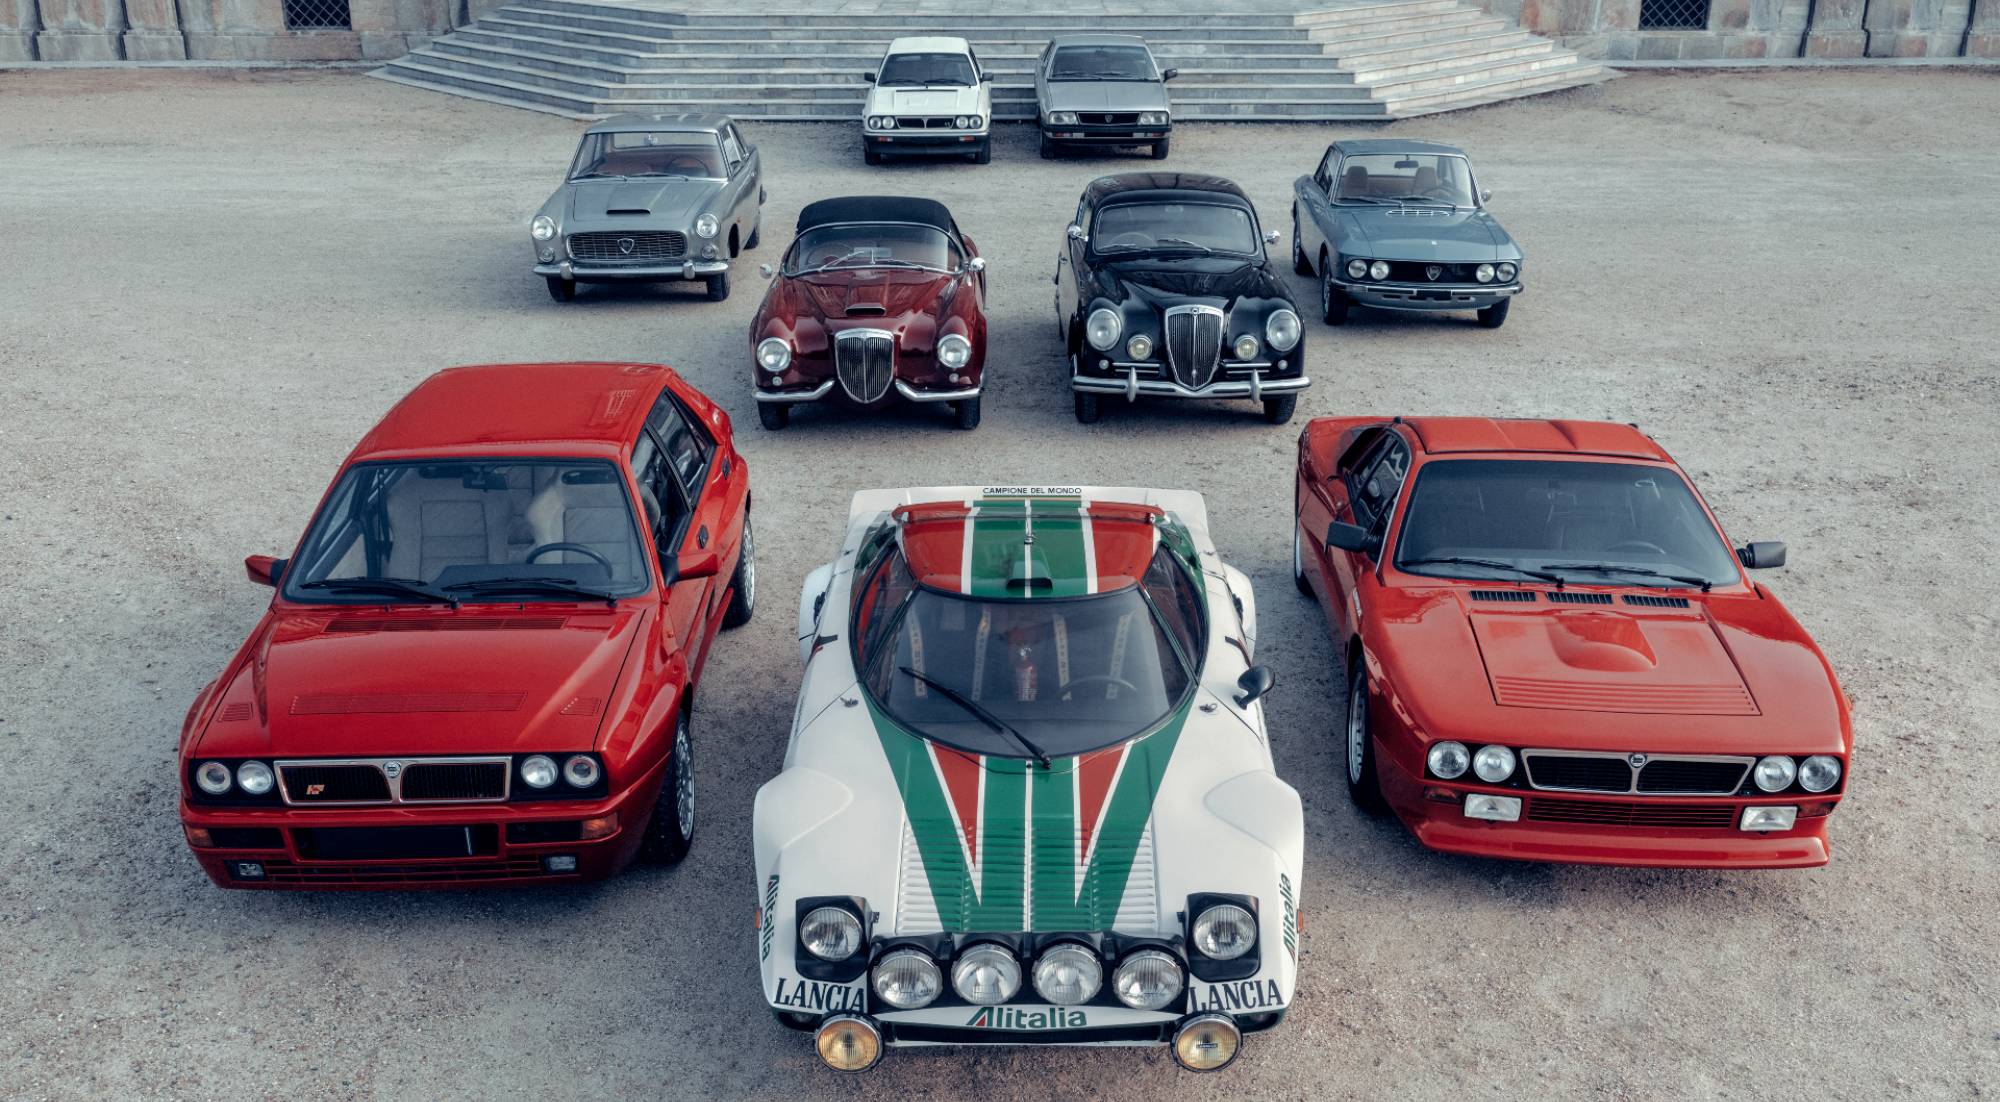 Quién era Lancia y qué representa su logotipo